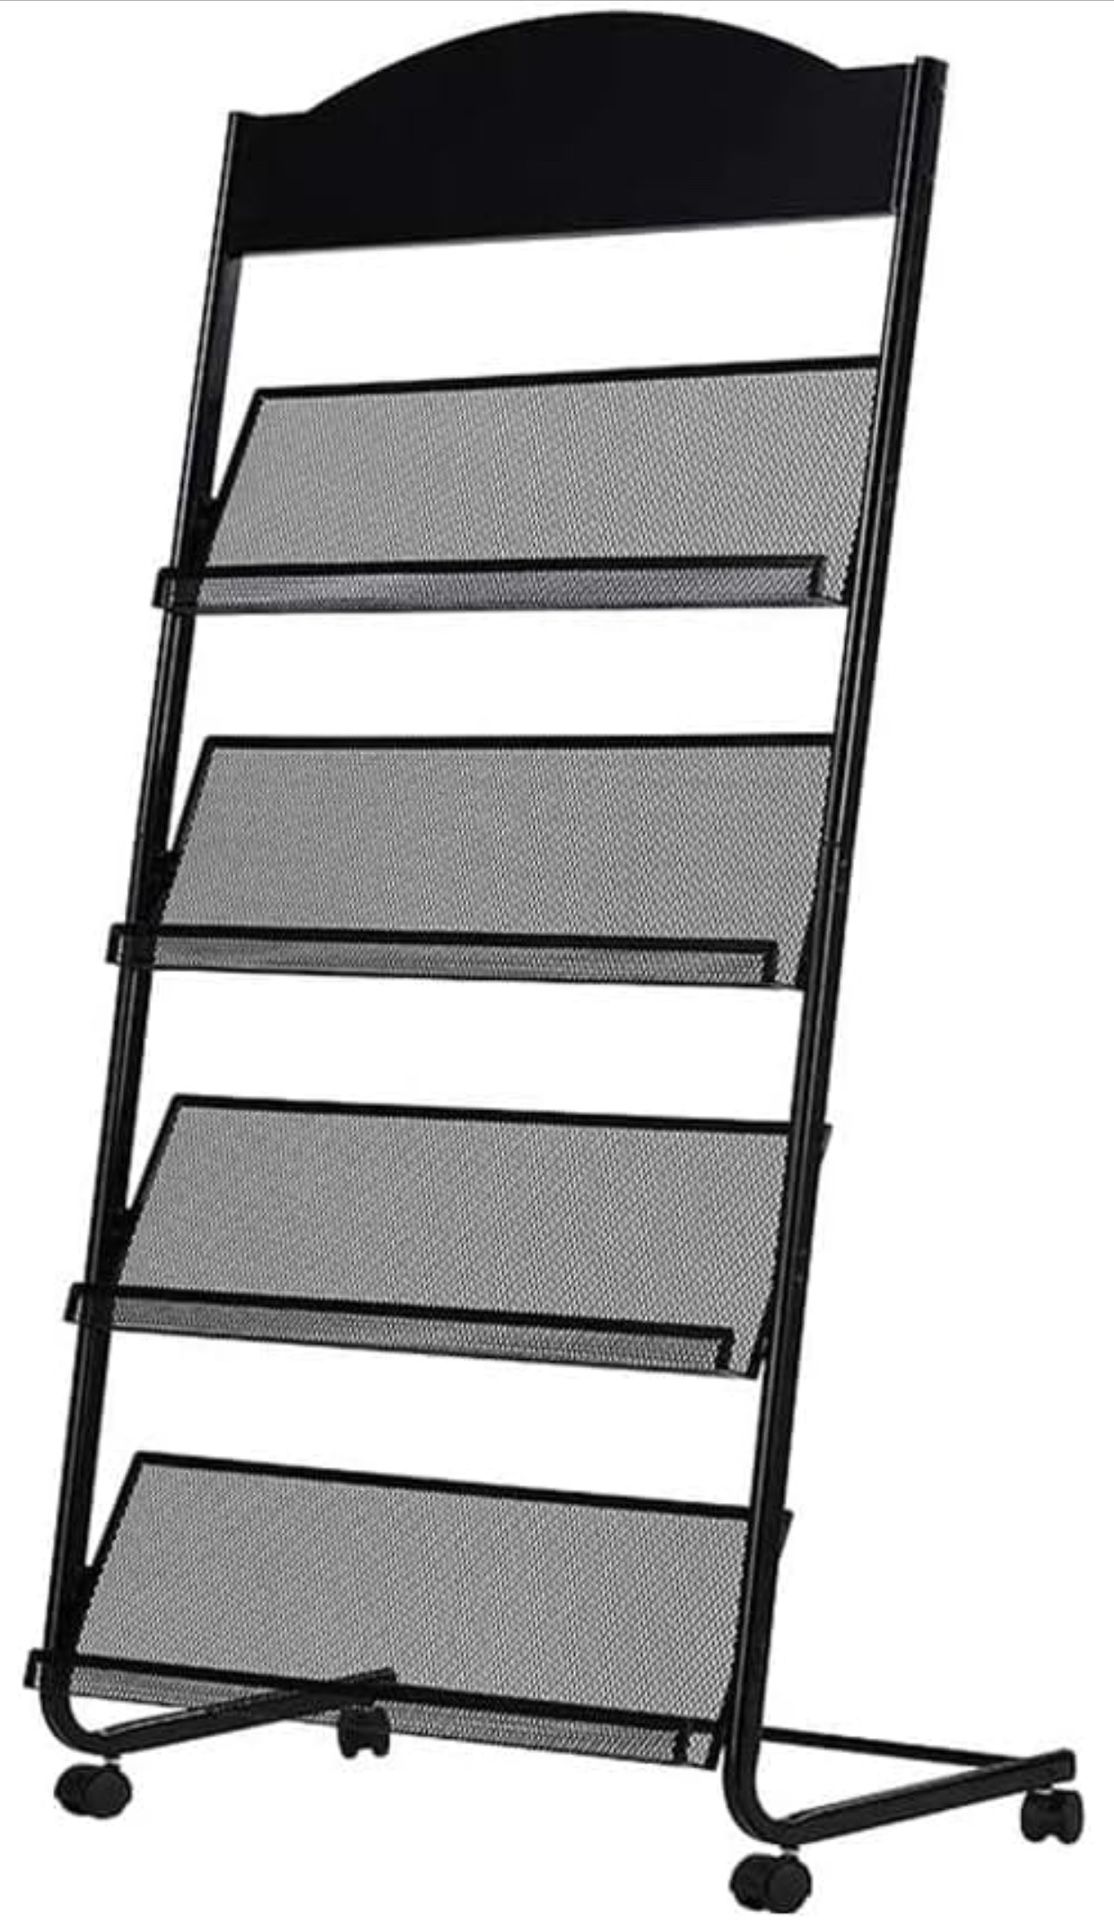 4.5 Ft Tall Metal Retail Display Floor Rack w/ Shelves & Wheels